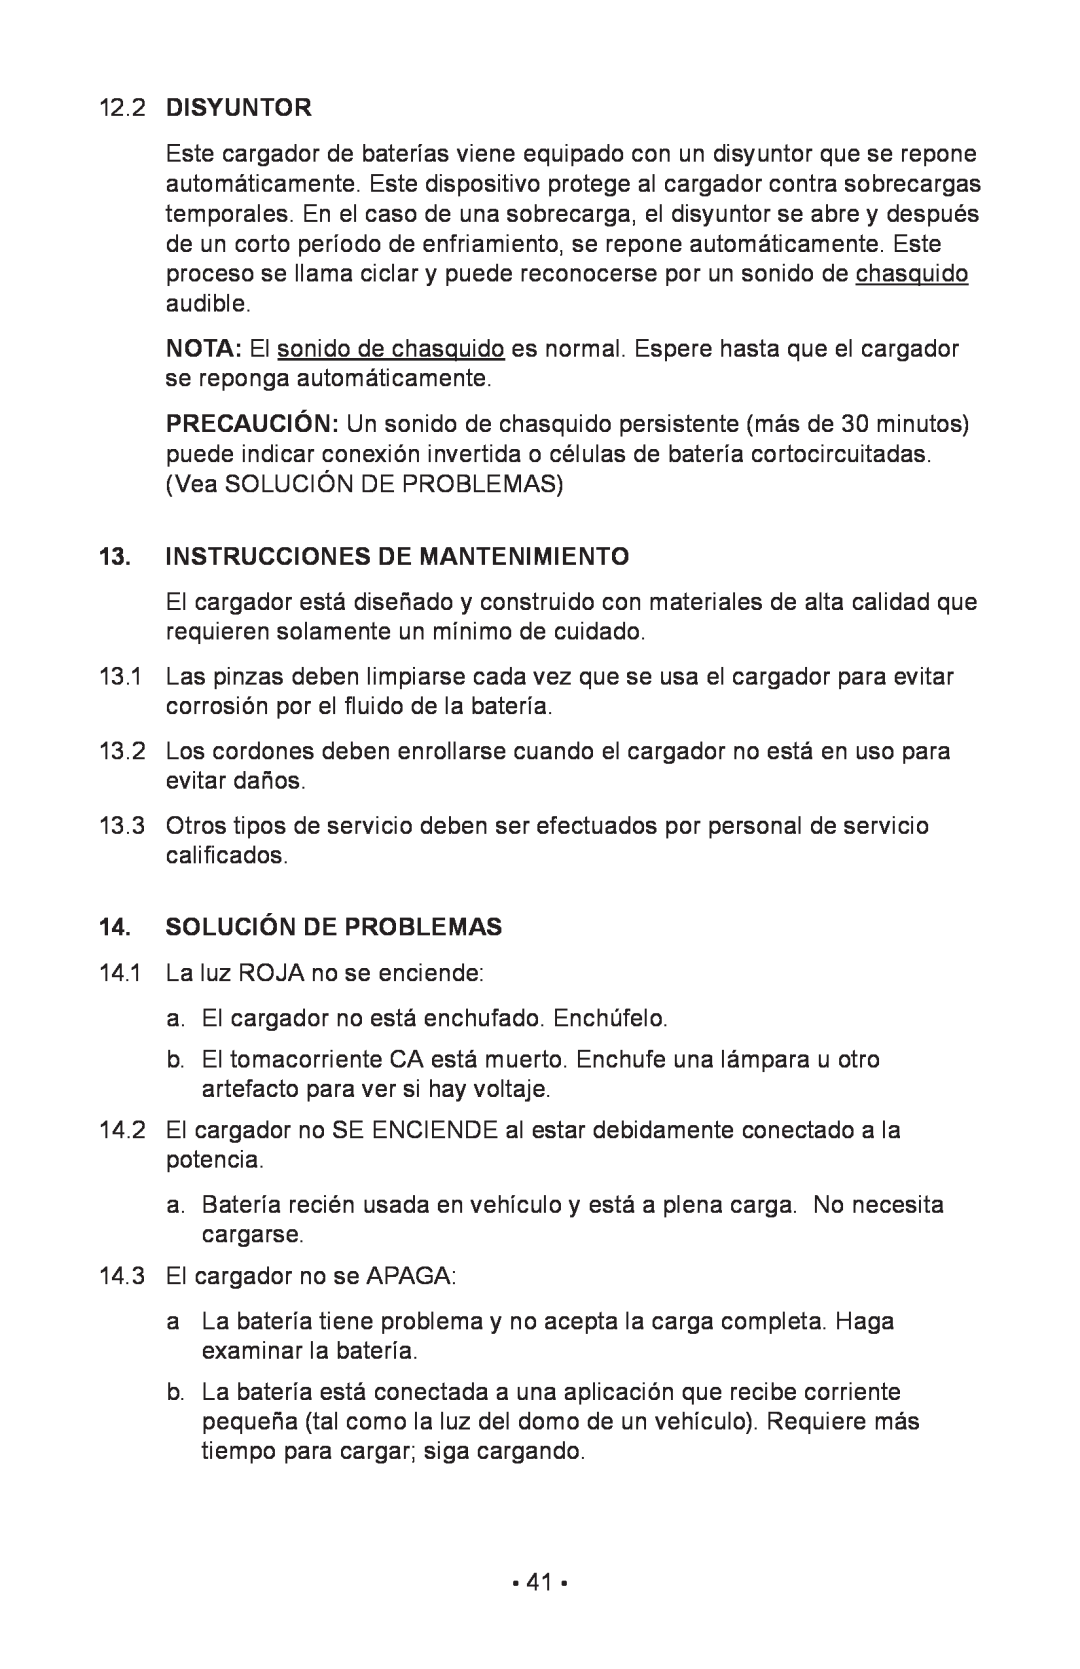 Schumacher 85-716 instruction manual Disyuntor, Instrucciones De Mantenimiento, Solución De Problemas 